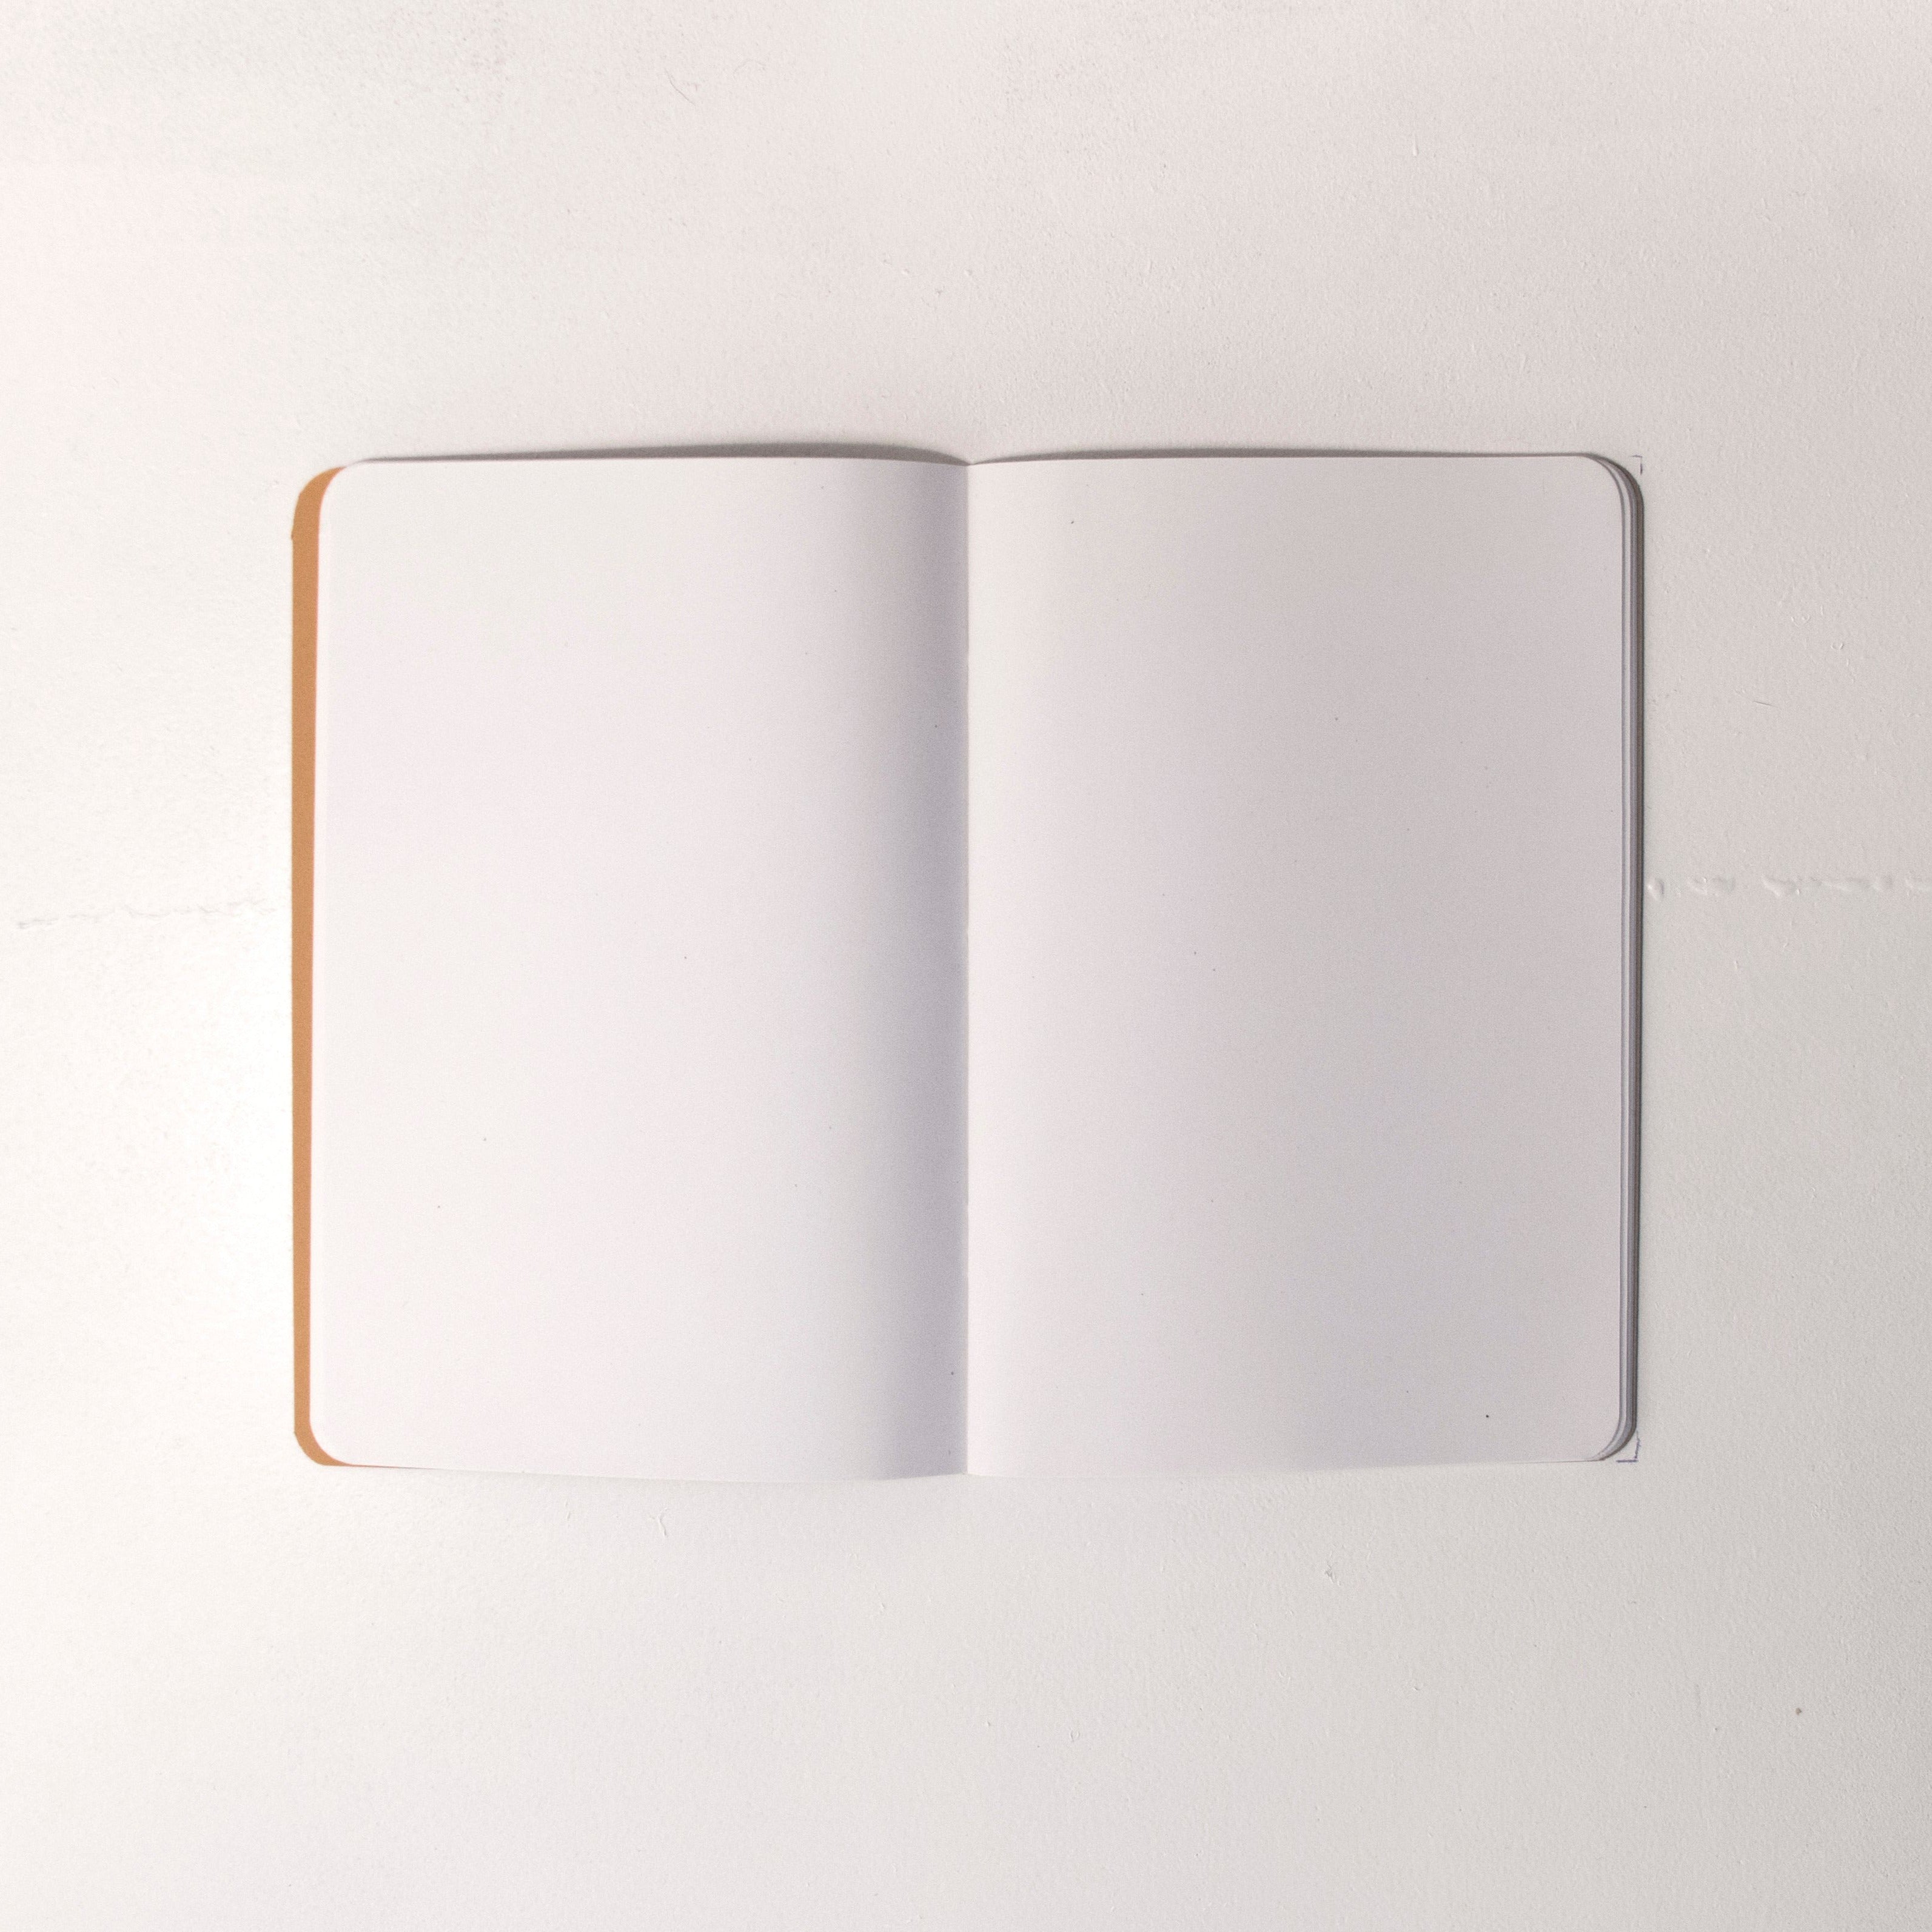 Open "Sketchs" blank notebook.| OCTÀGON DESIGN 